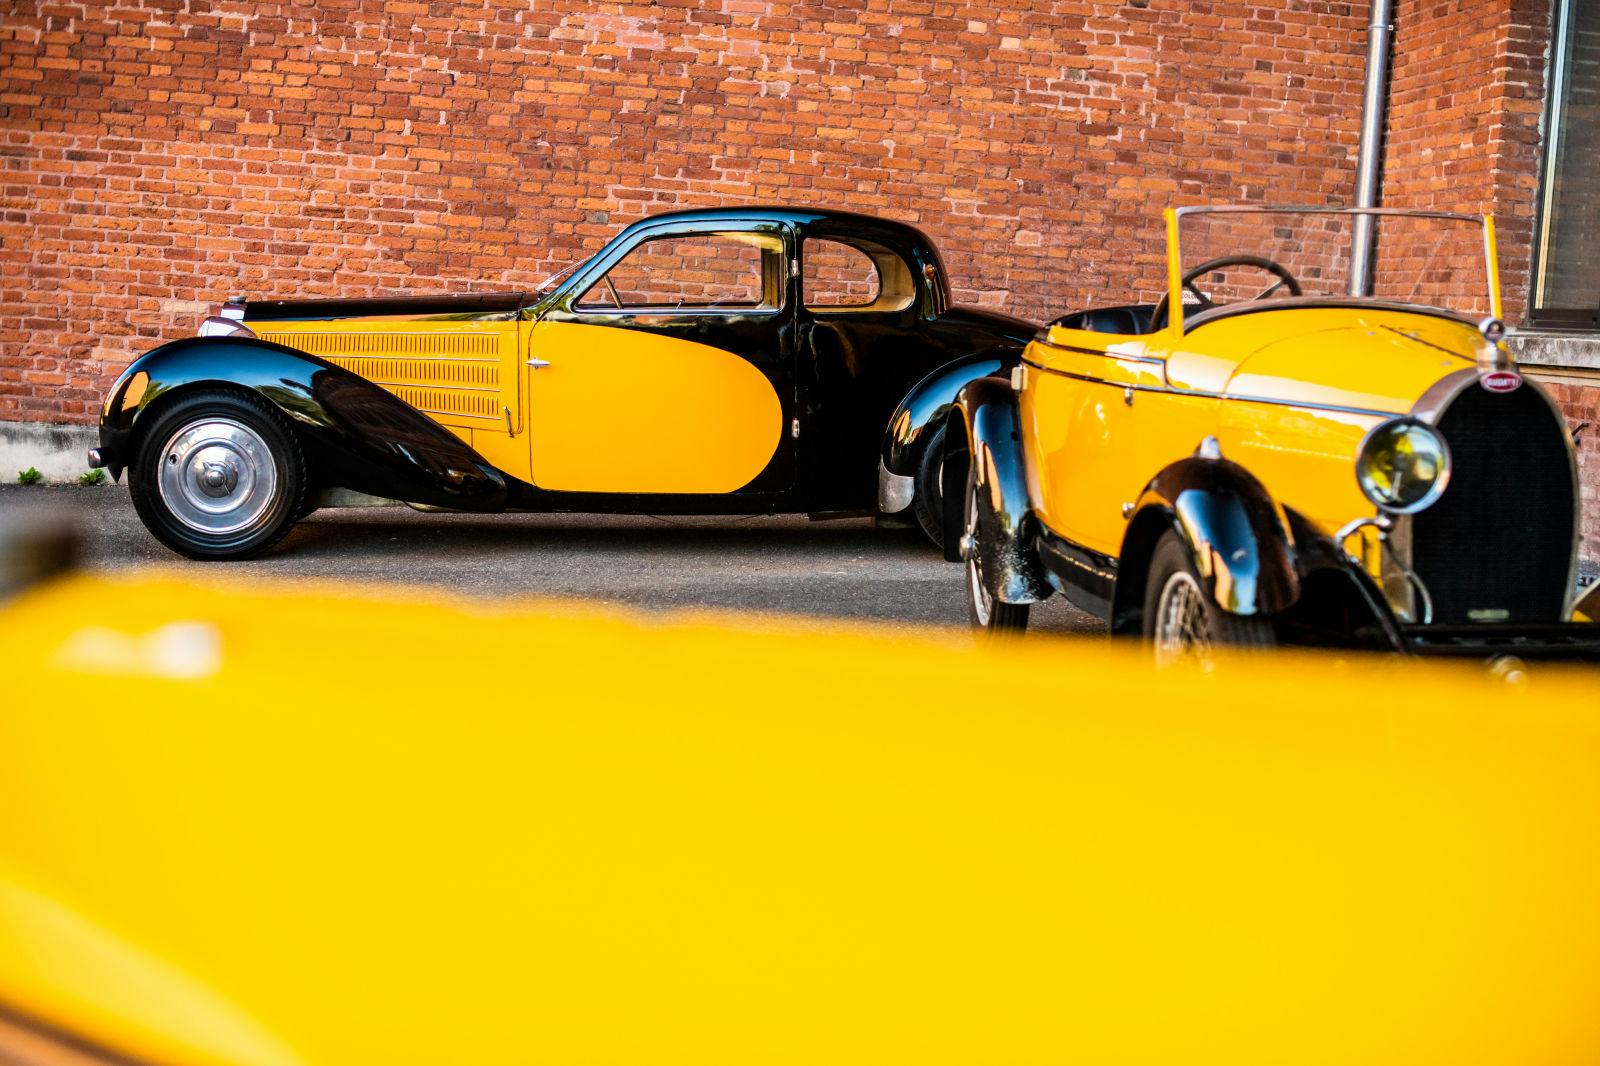 Les couleurs préférées d’Ettore Bugatti : le noir et le jaune.